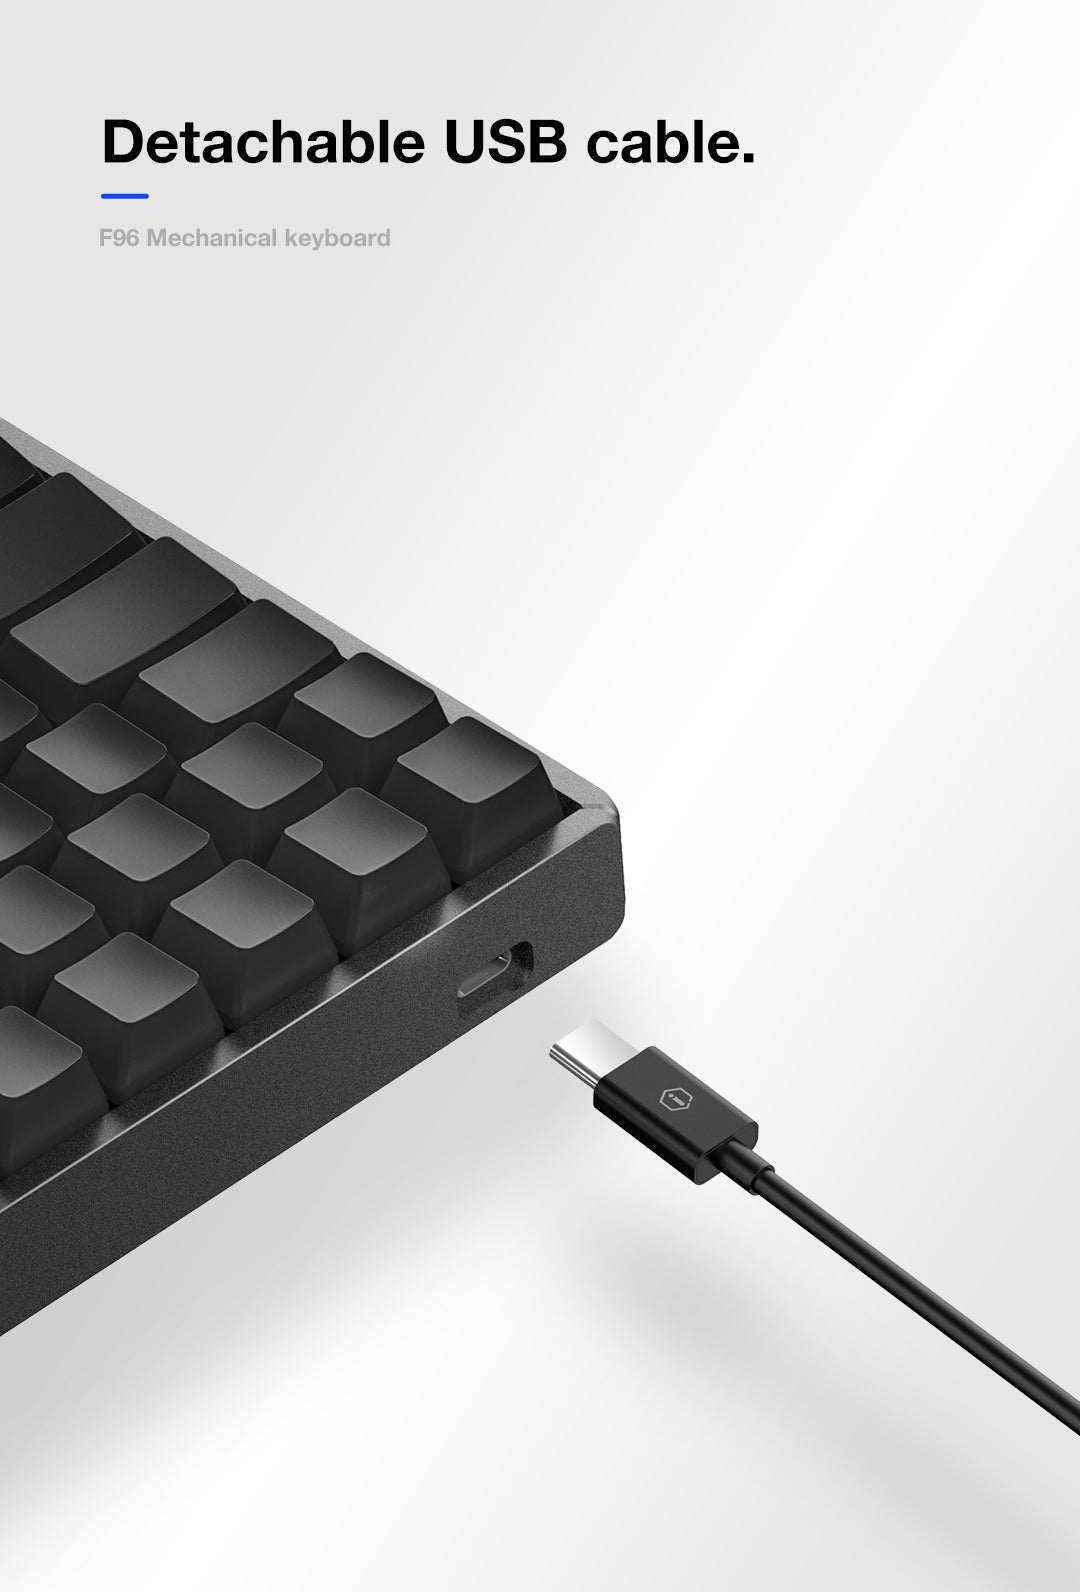 Best 96% Mechanical Keyboard - F96-Knight Wireless Keyboard | IQUNIX